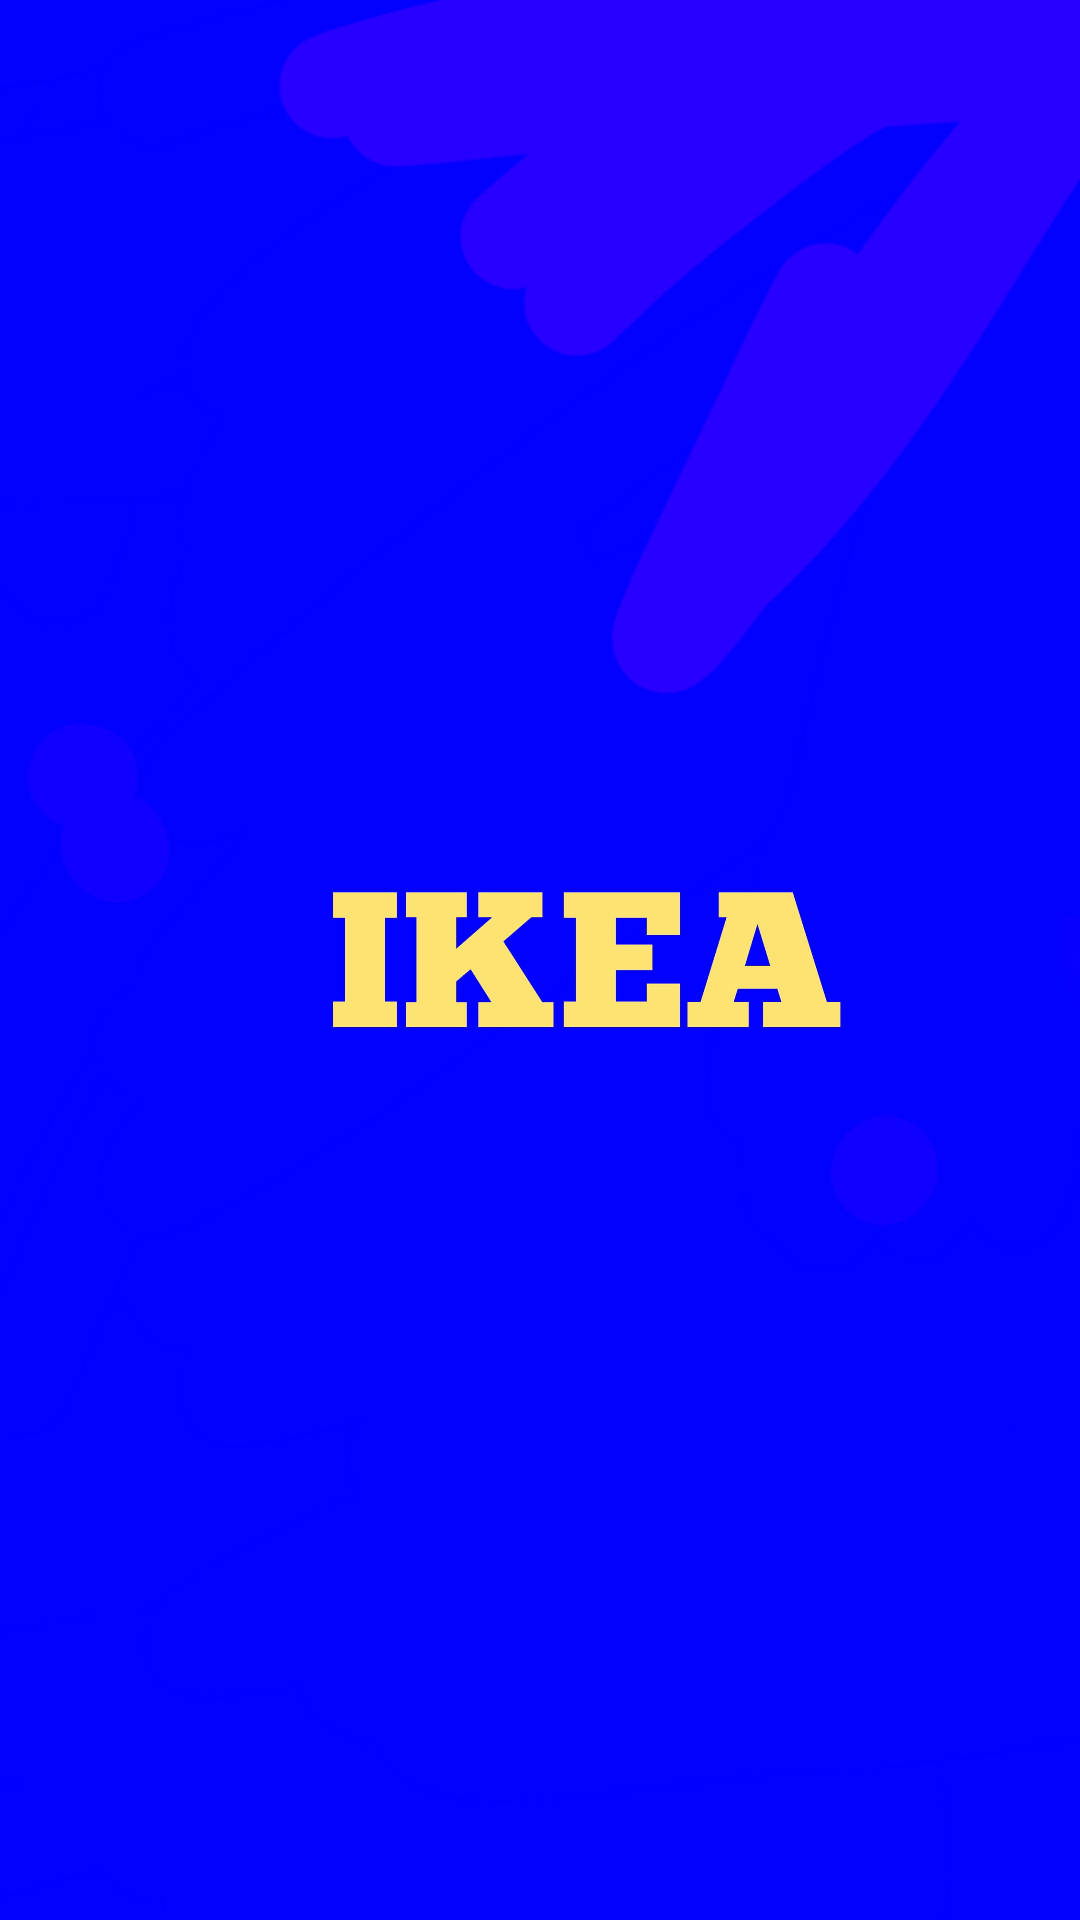 Simple IKEA Logo Blue Wallpaper